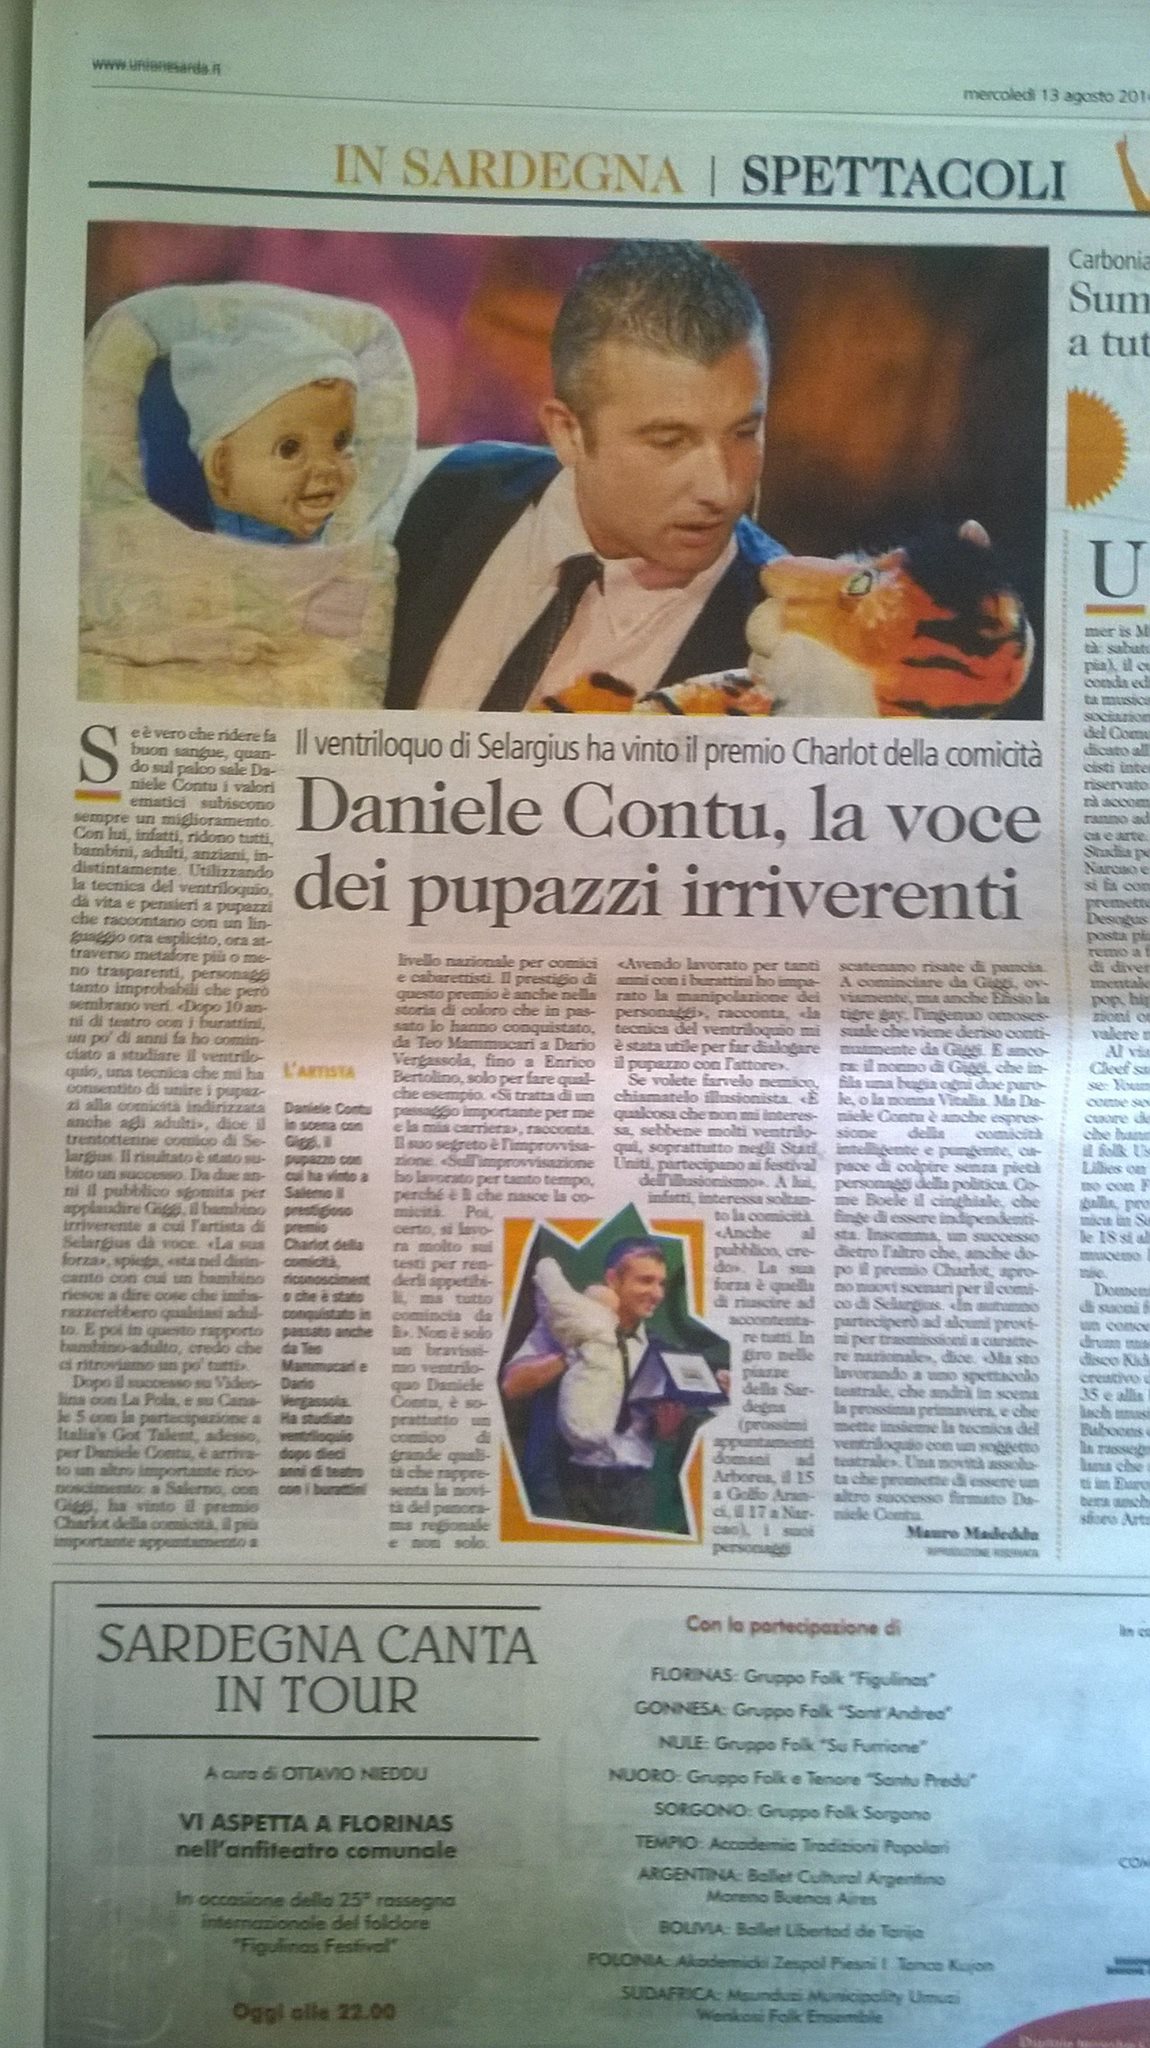 Daniele Contu, la voce dei pupazzi irriverenti.